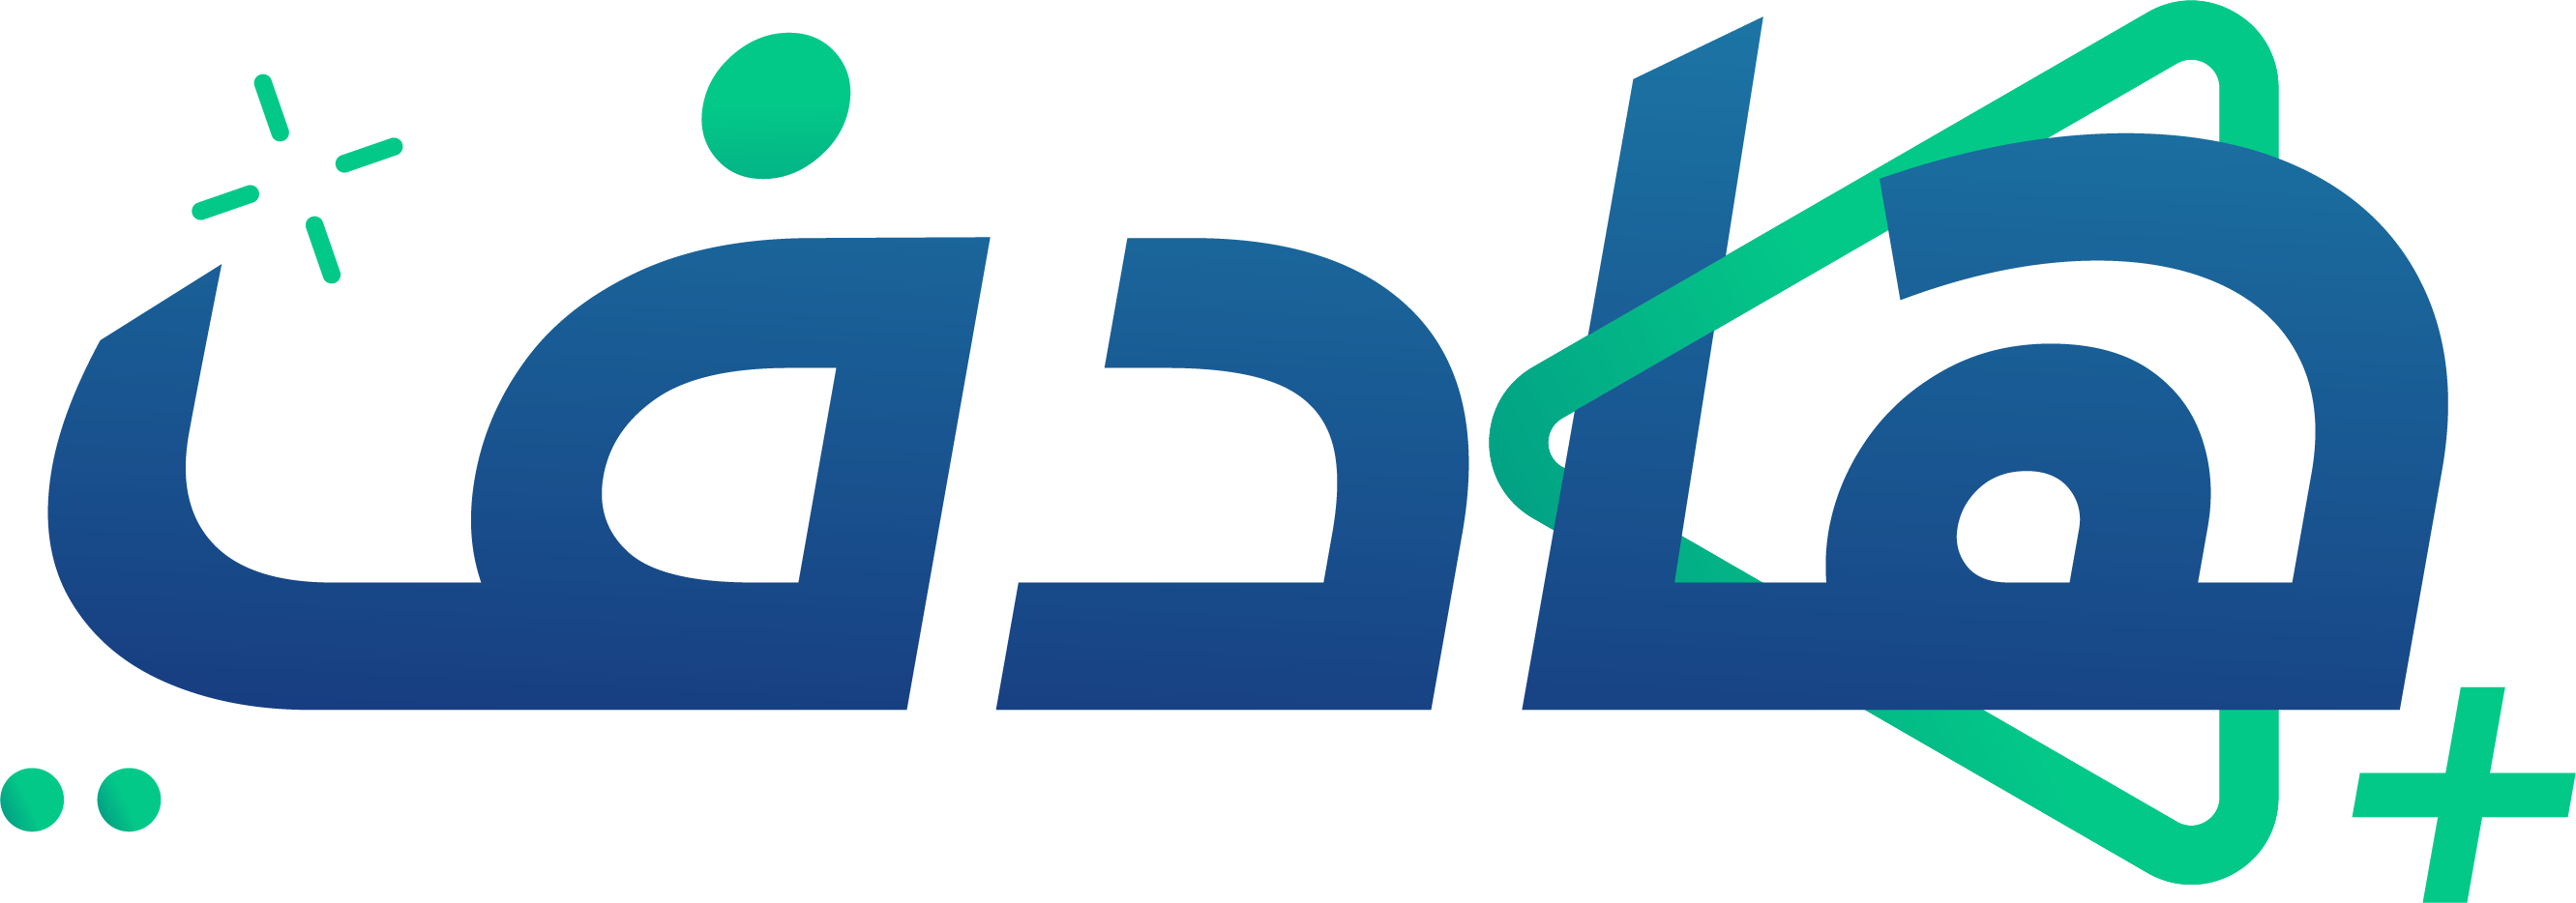 Hadef_logo